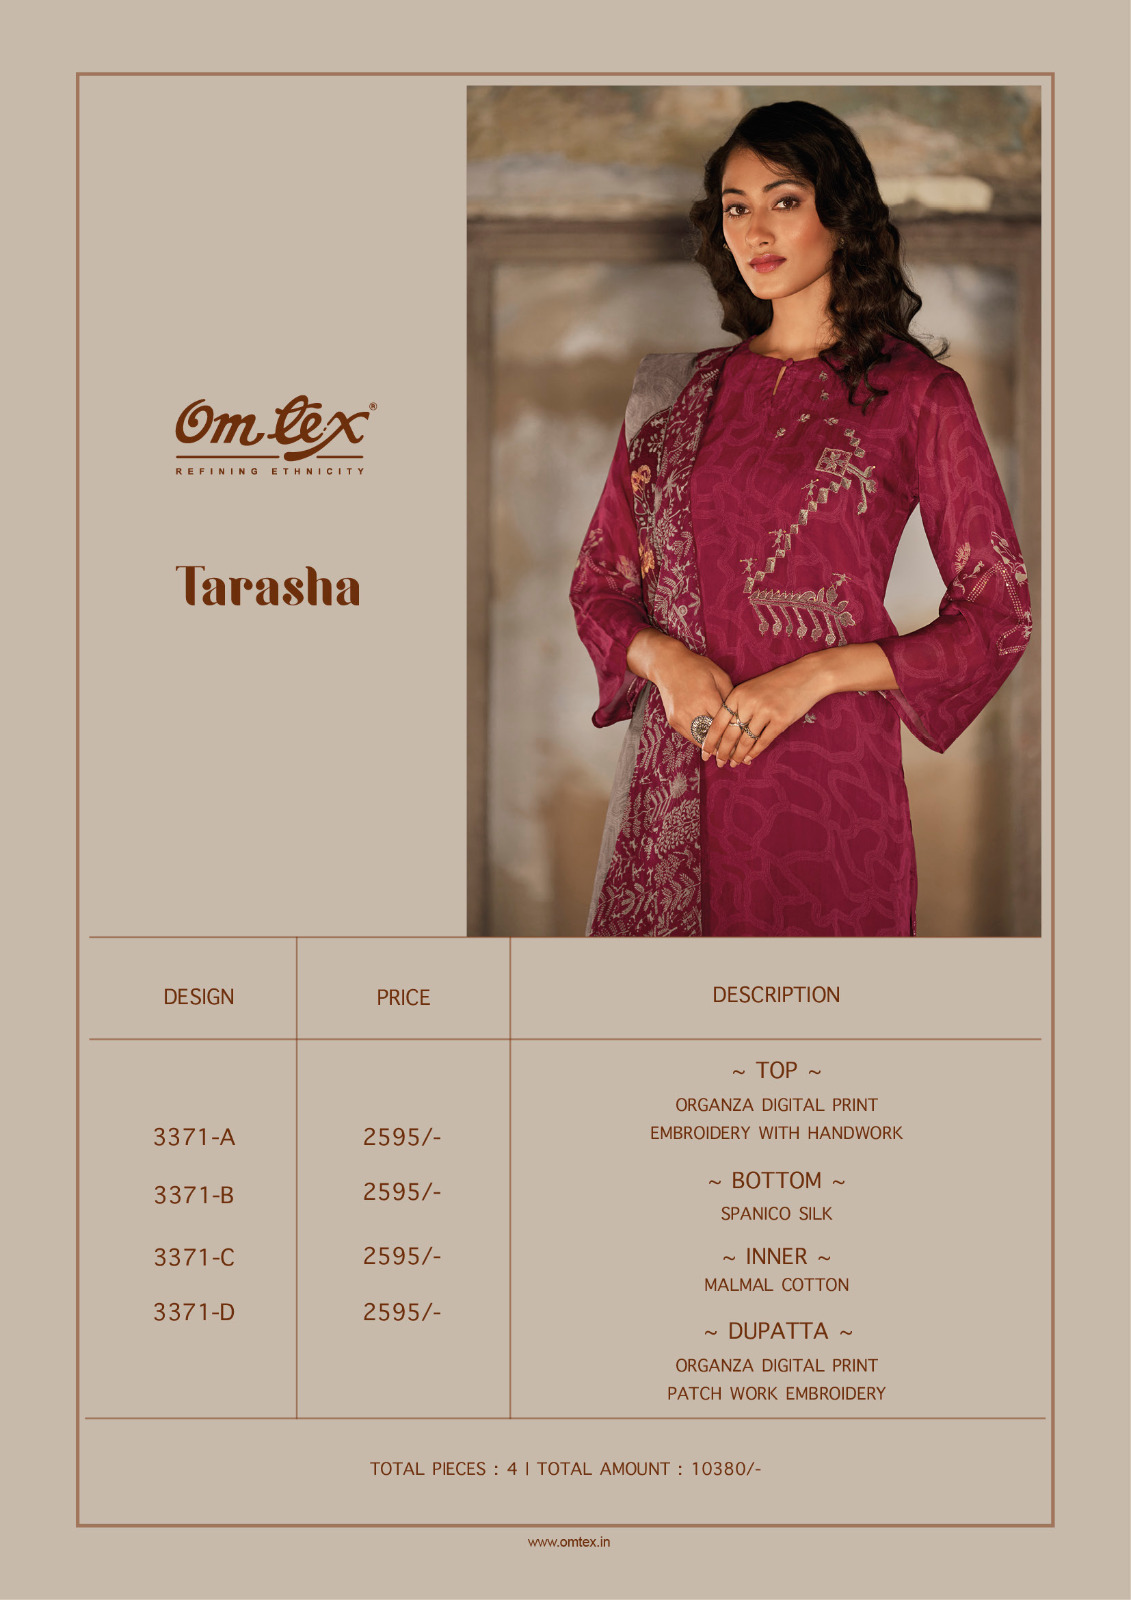 Omtex Tarasha collection 7